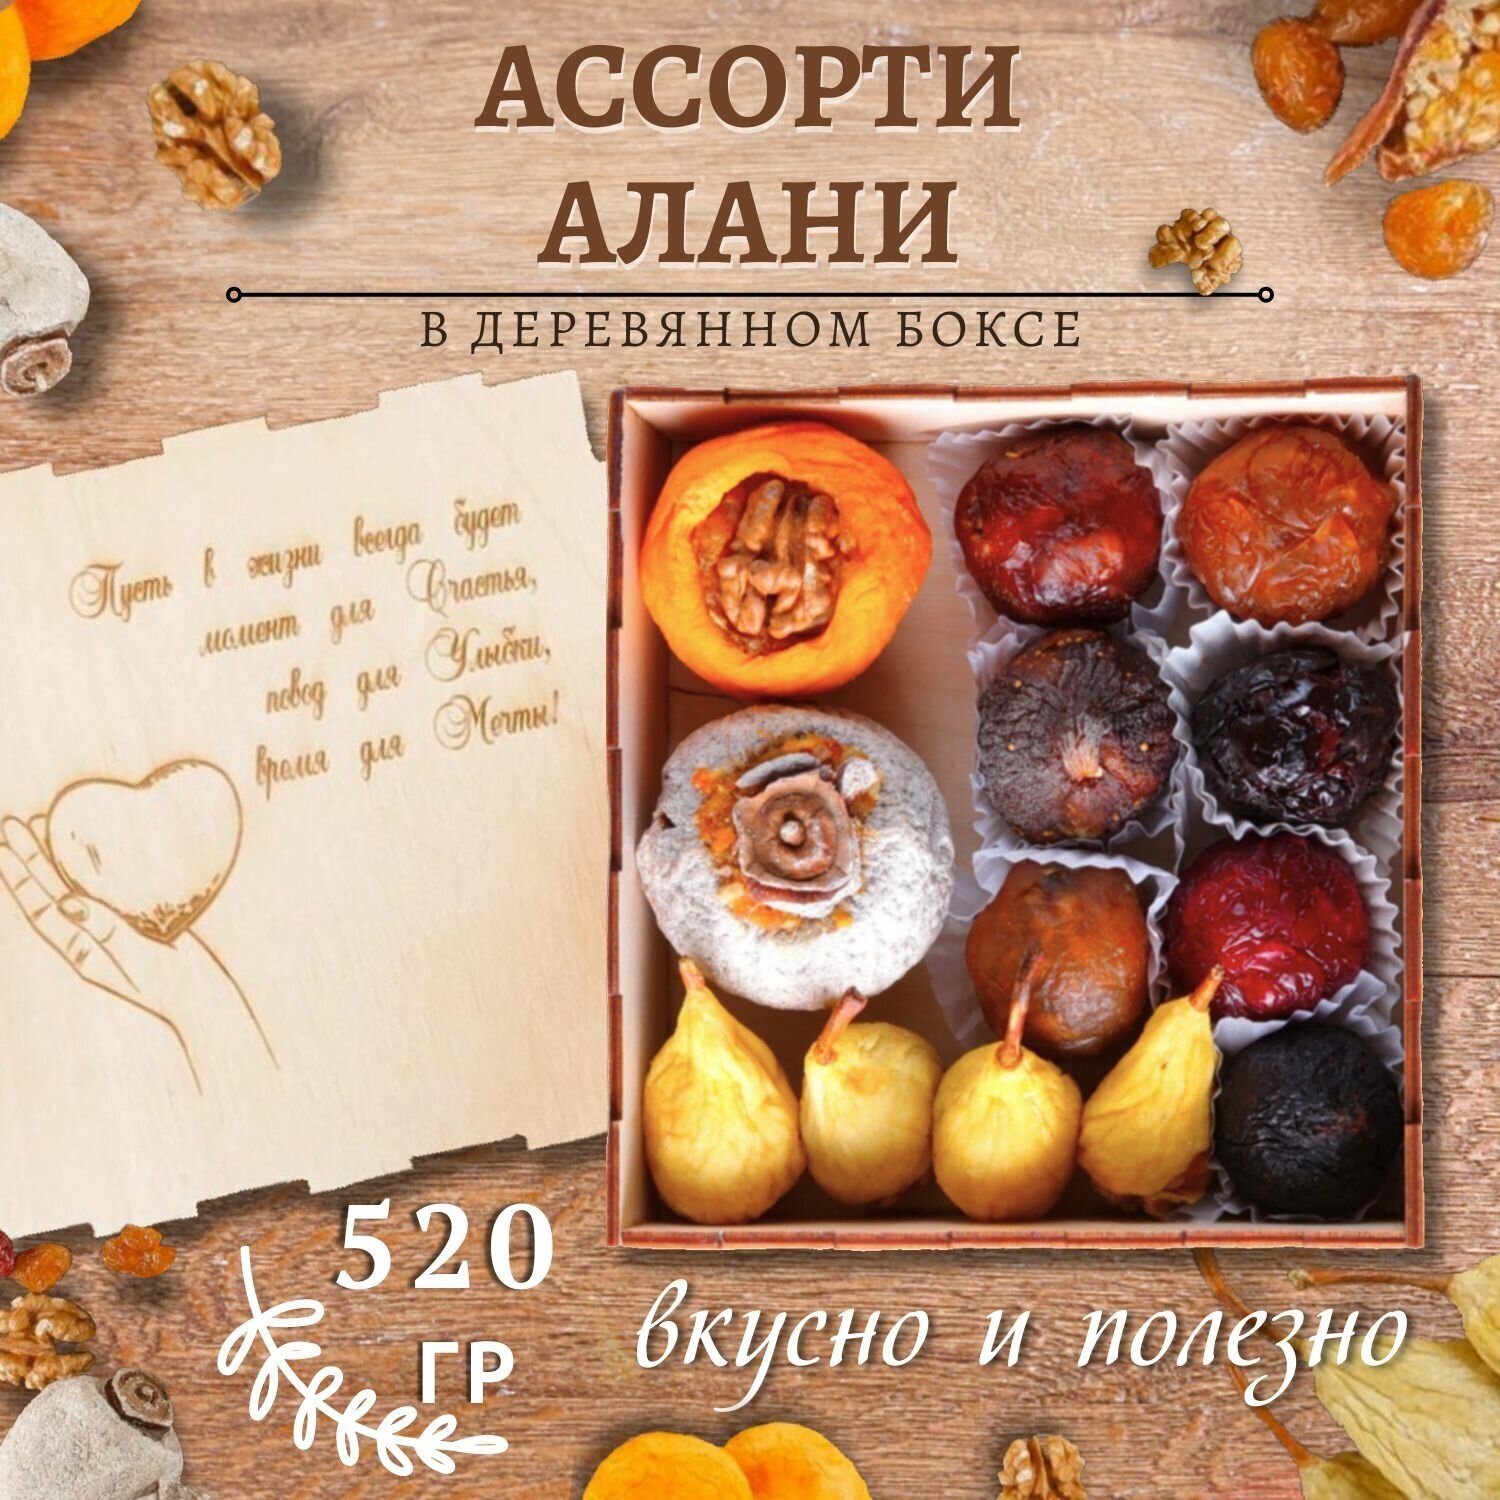 Деревянный бокс "Алани ассорти" 520 гр гравировка сердце/подарочный набор/армянские сладости Mealshop